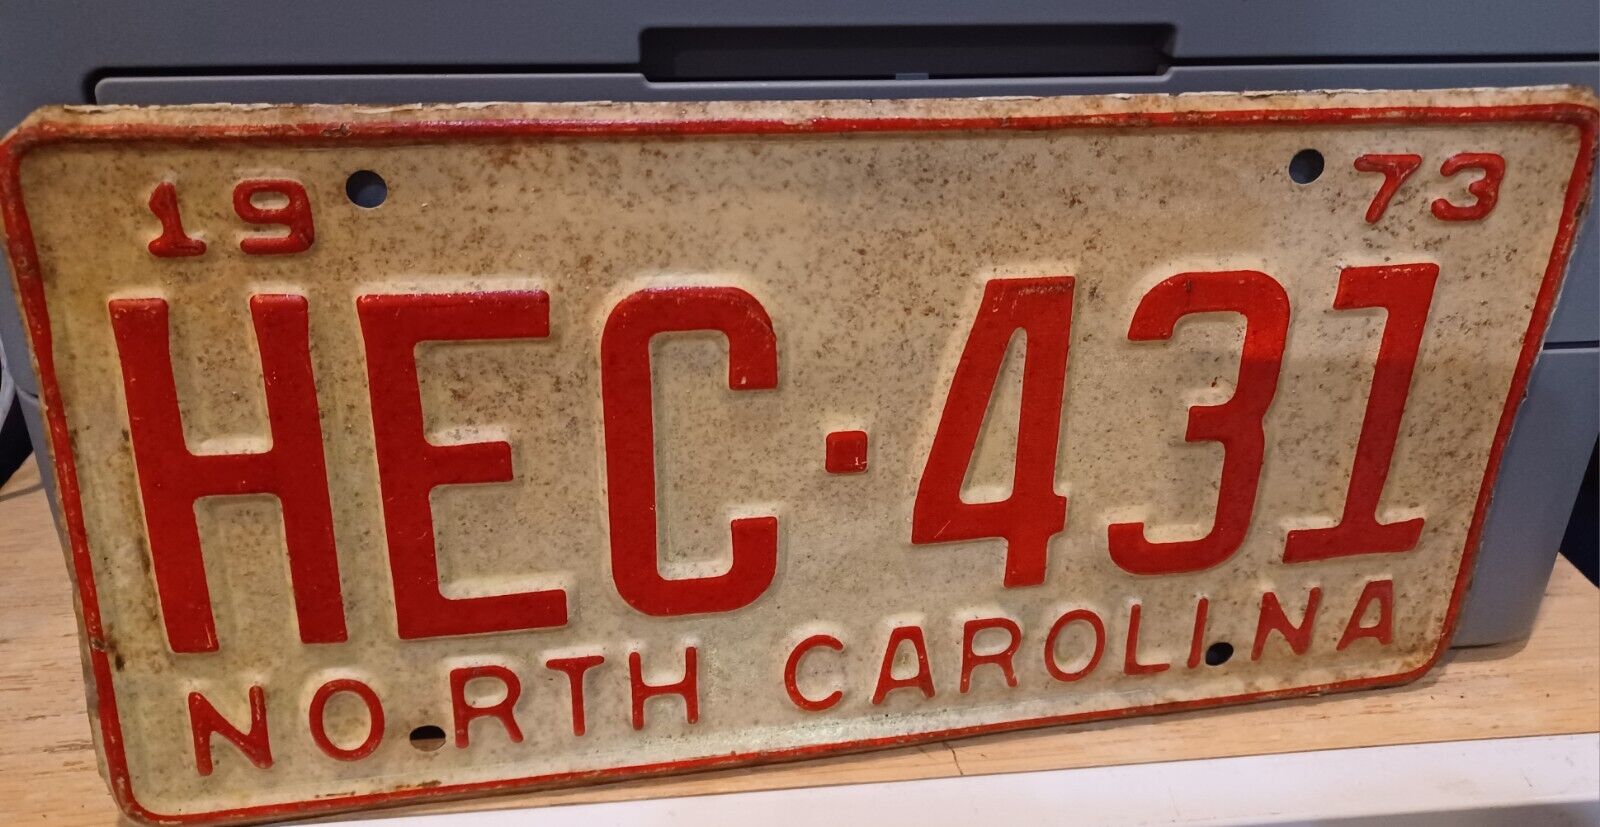 1973 NORTH CAROLINA NC LICENSE PLATE TAG HEC-431